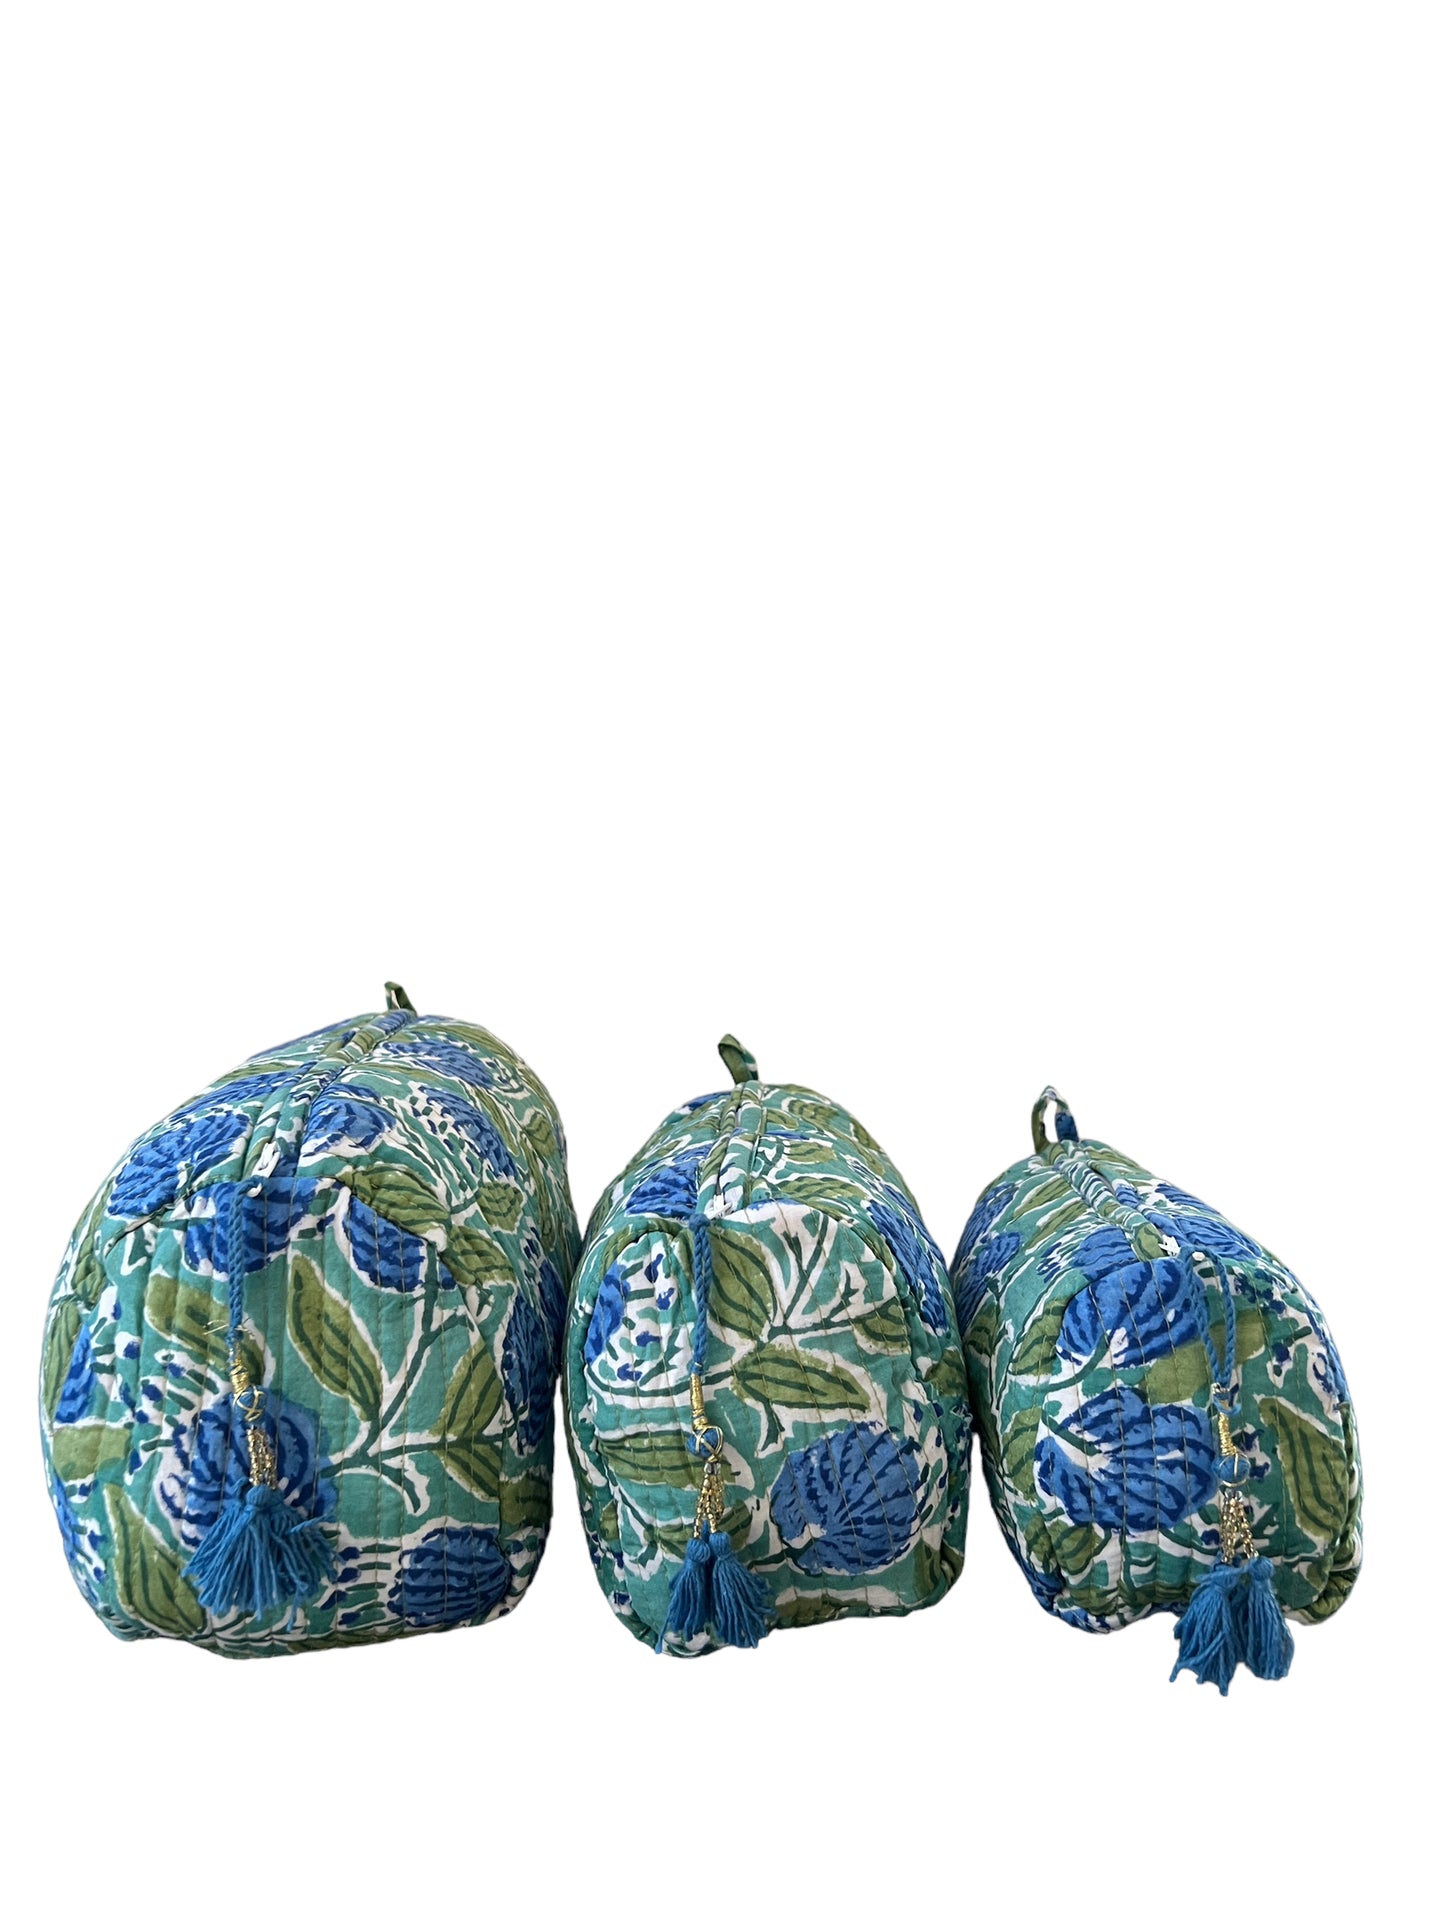 (M083) Make Up Bag Aqua Dark Blue Flowers